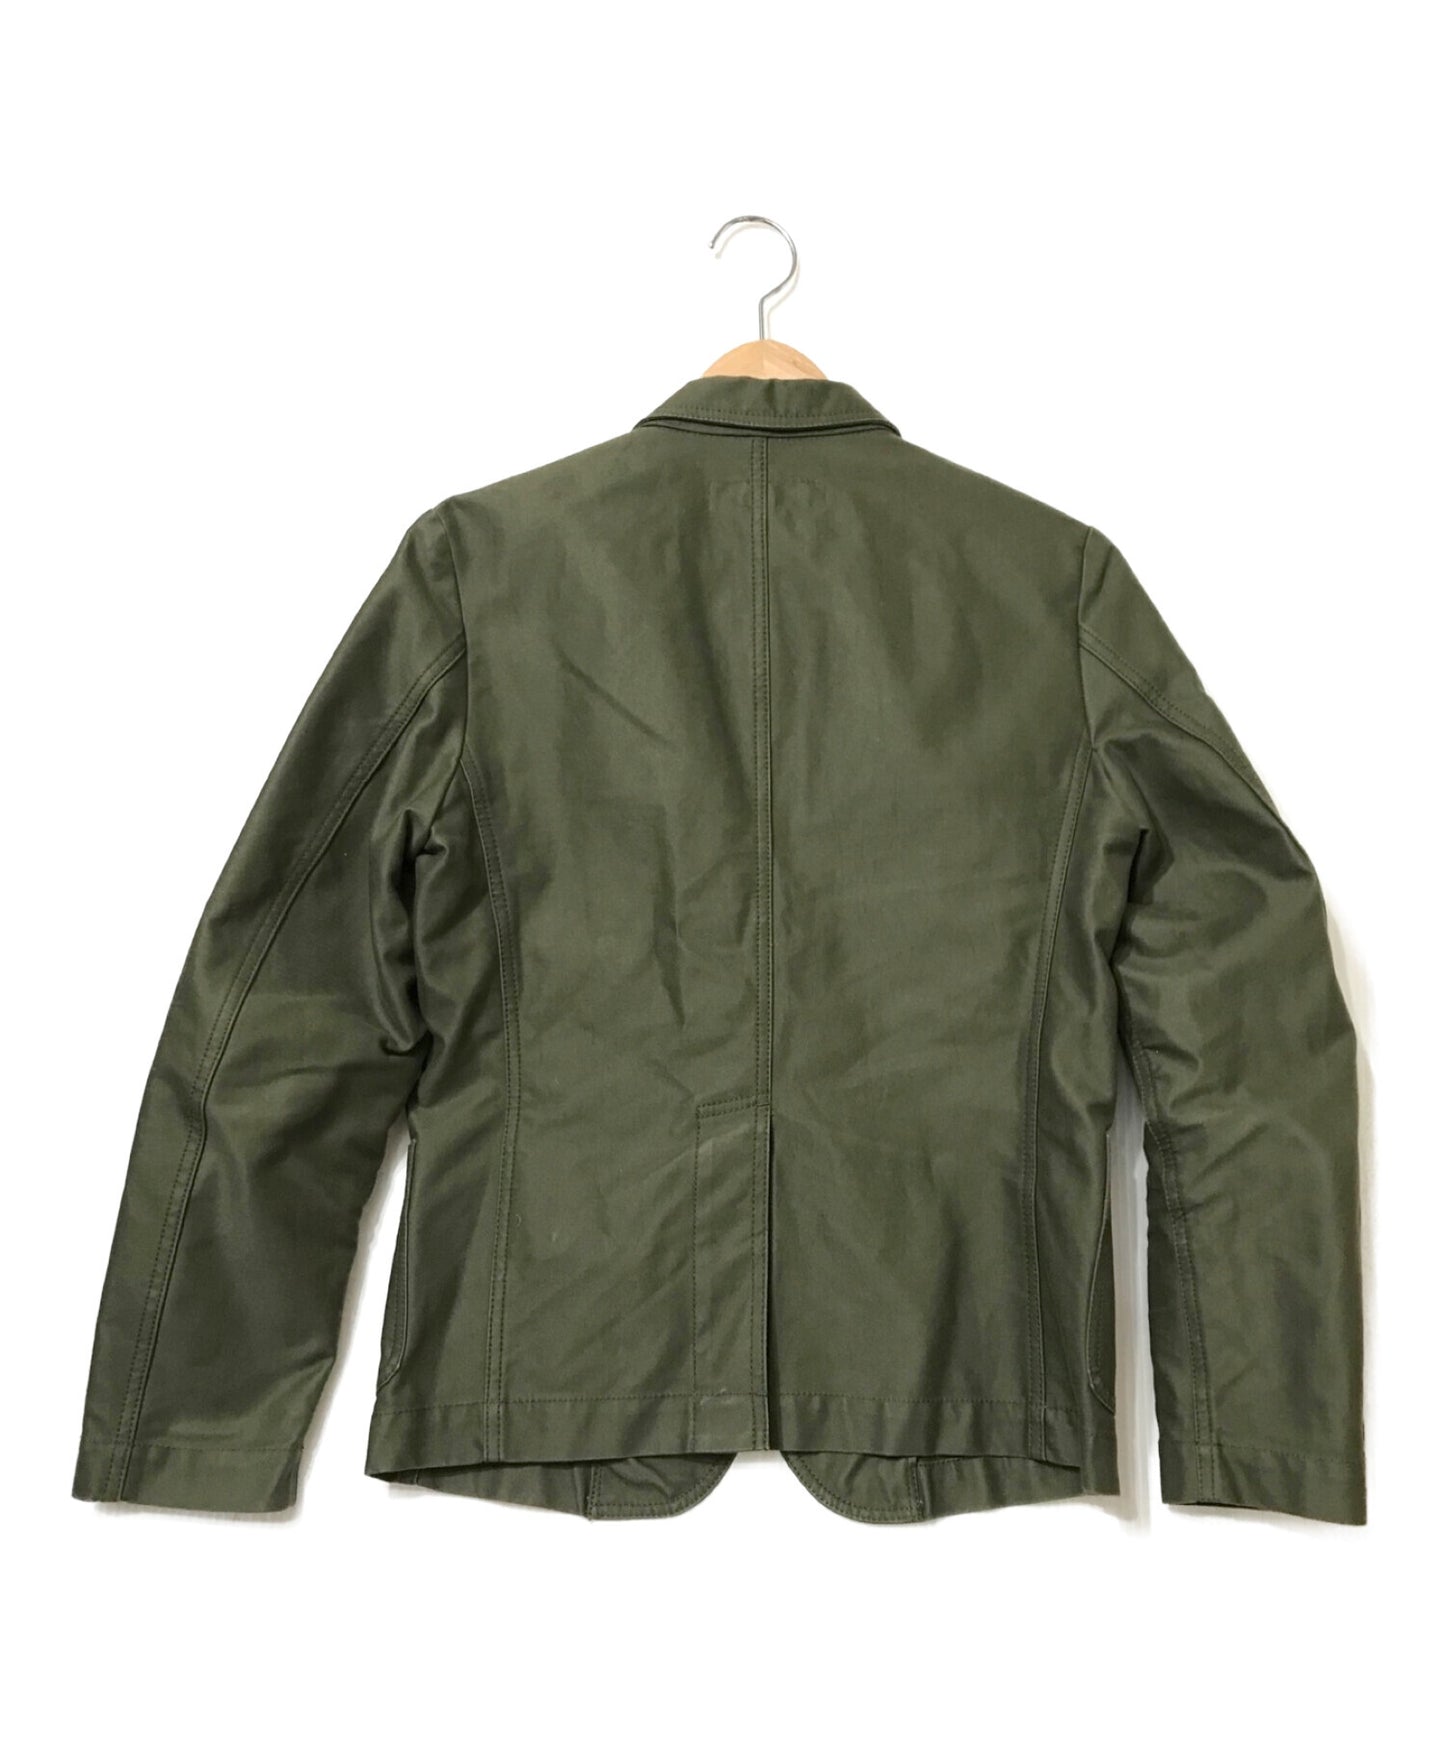 COMME des GARCONS SHIRT 3B Cotton Jacket S18135